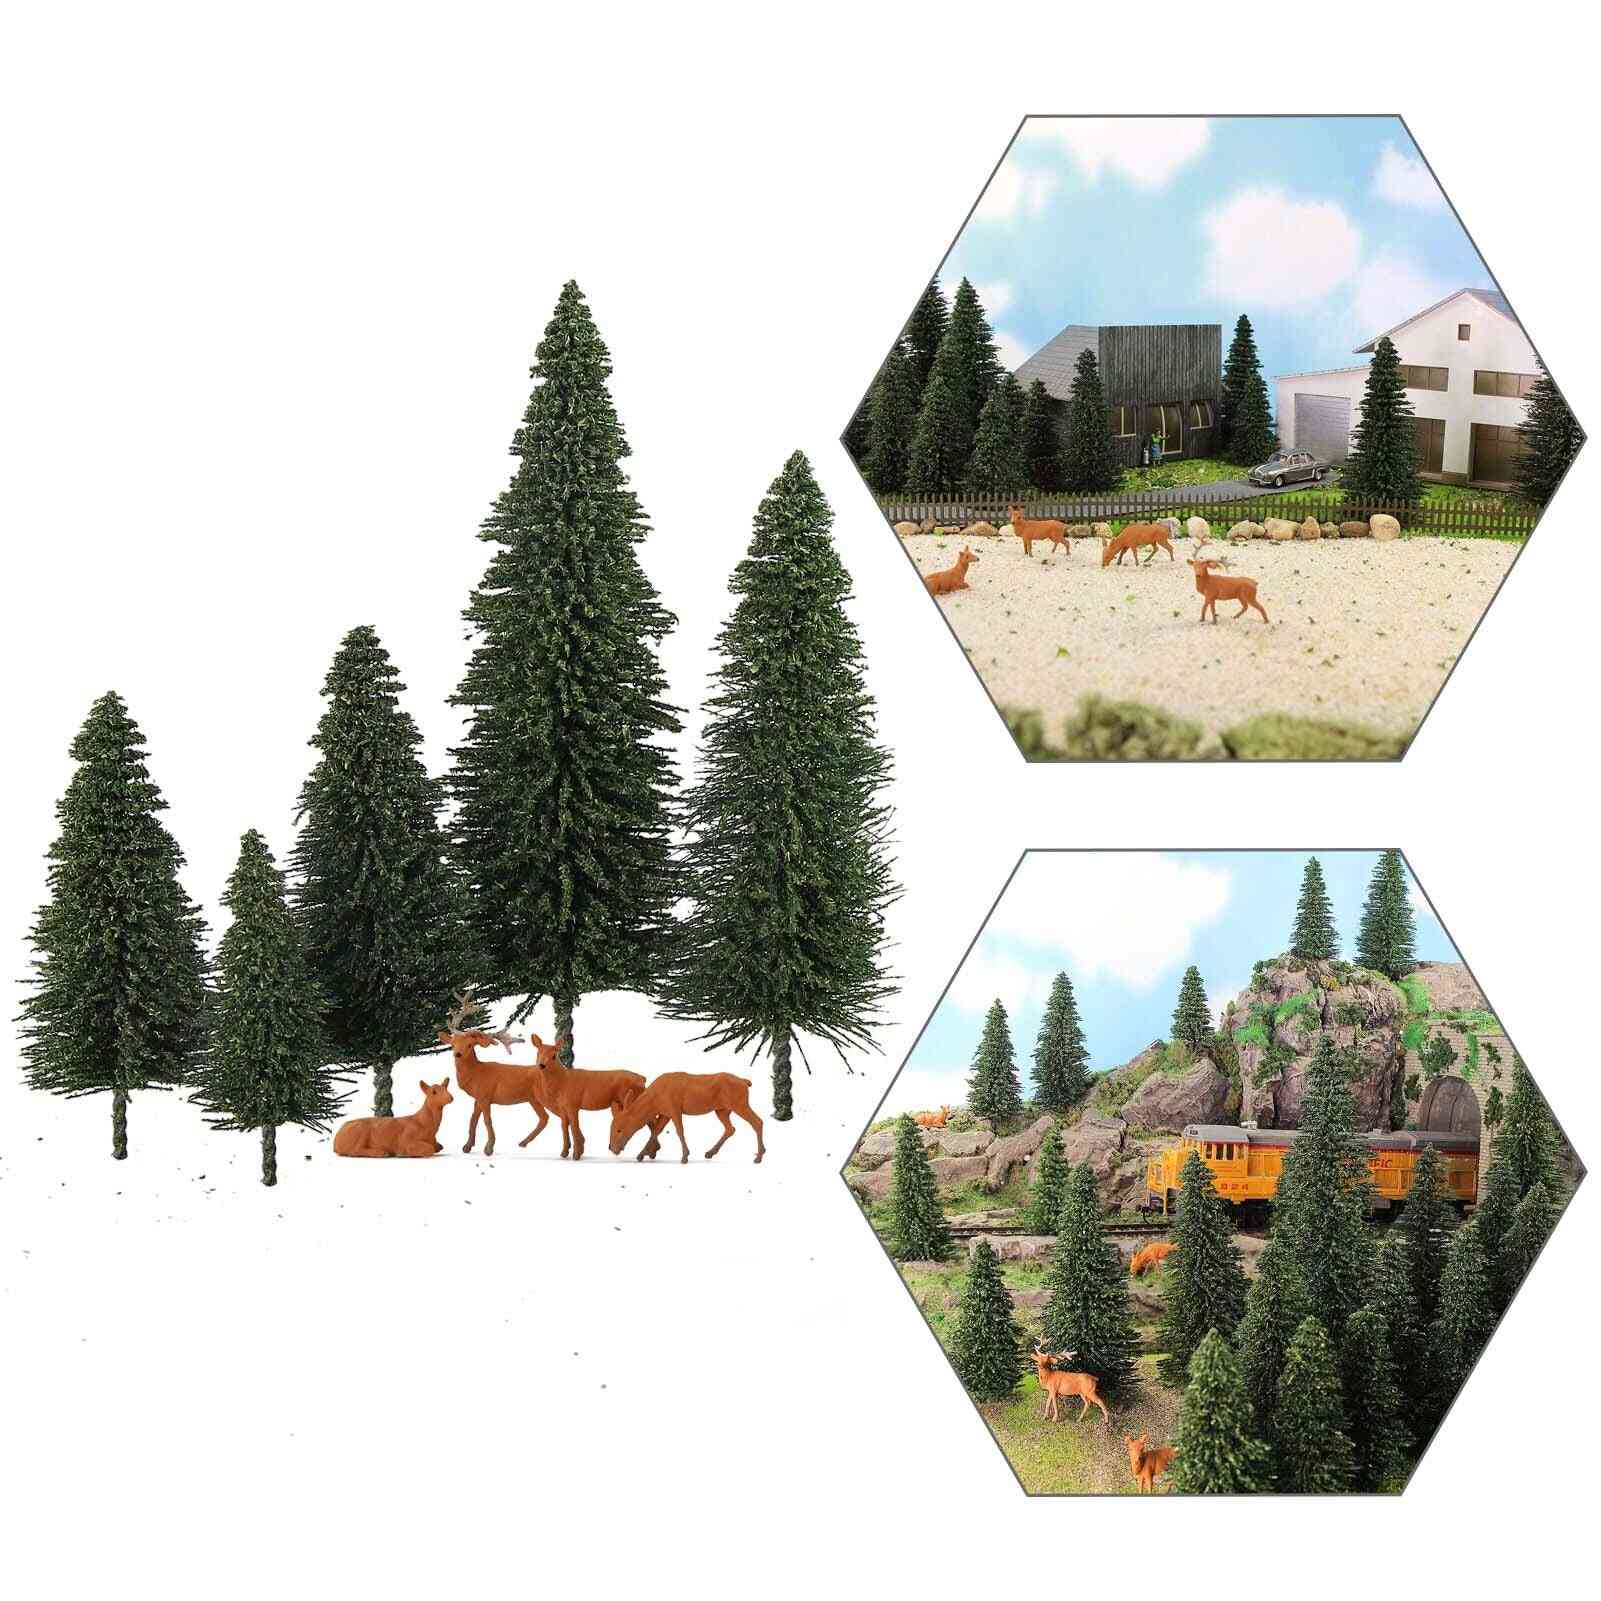 Pine Trees Green Pines Scale 1:87 Model Moose Deer, Railway Layout Mini Scenery